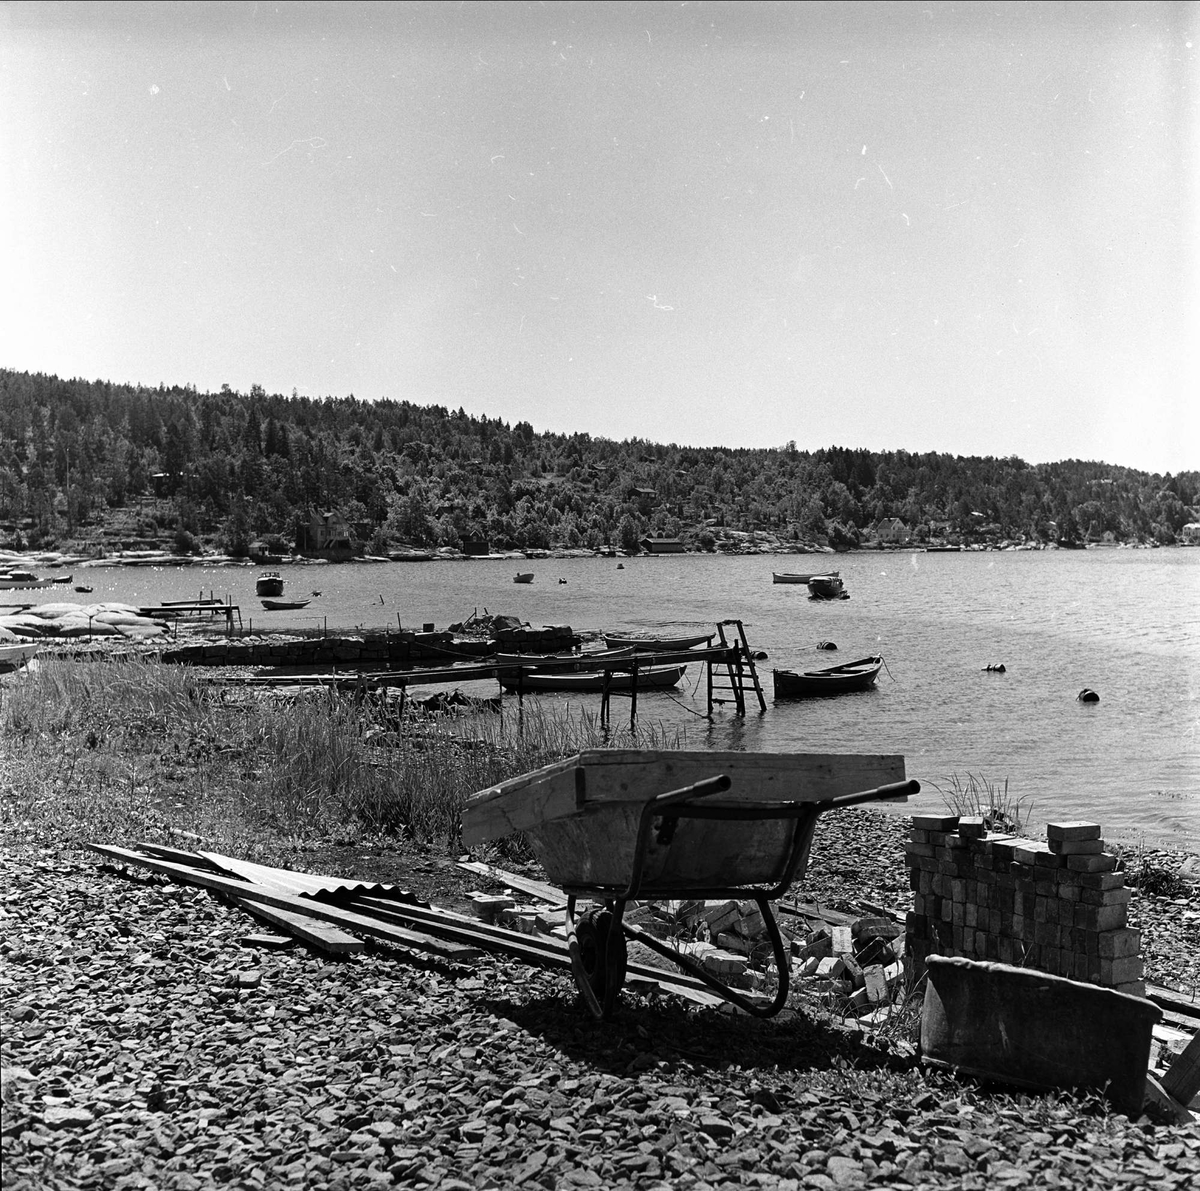 Nesodden, Akershus, 17.06.1961. Landskap med brygger og båter. Trillebår.